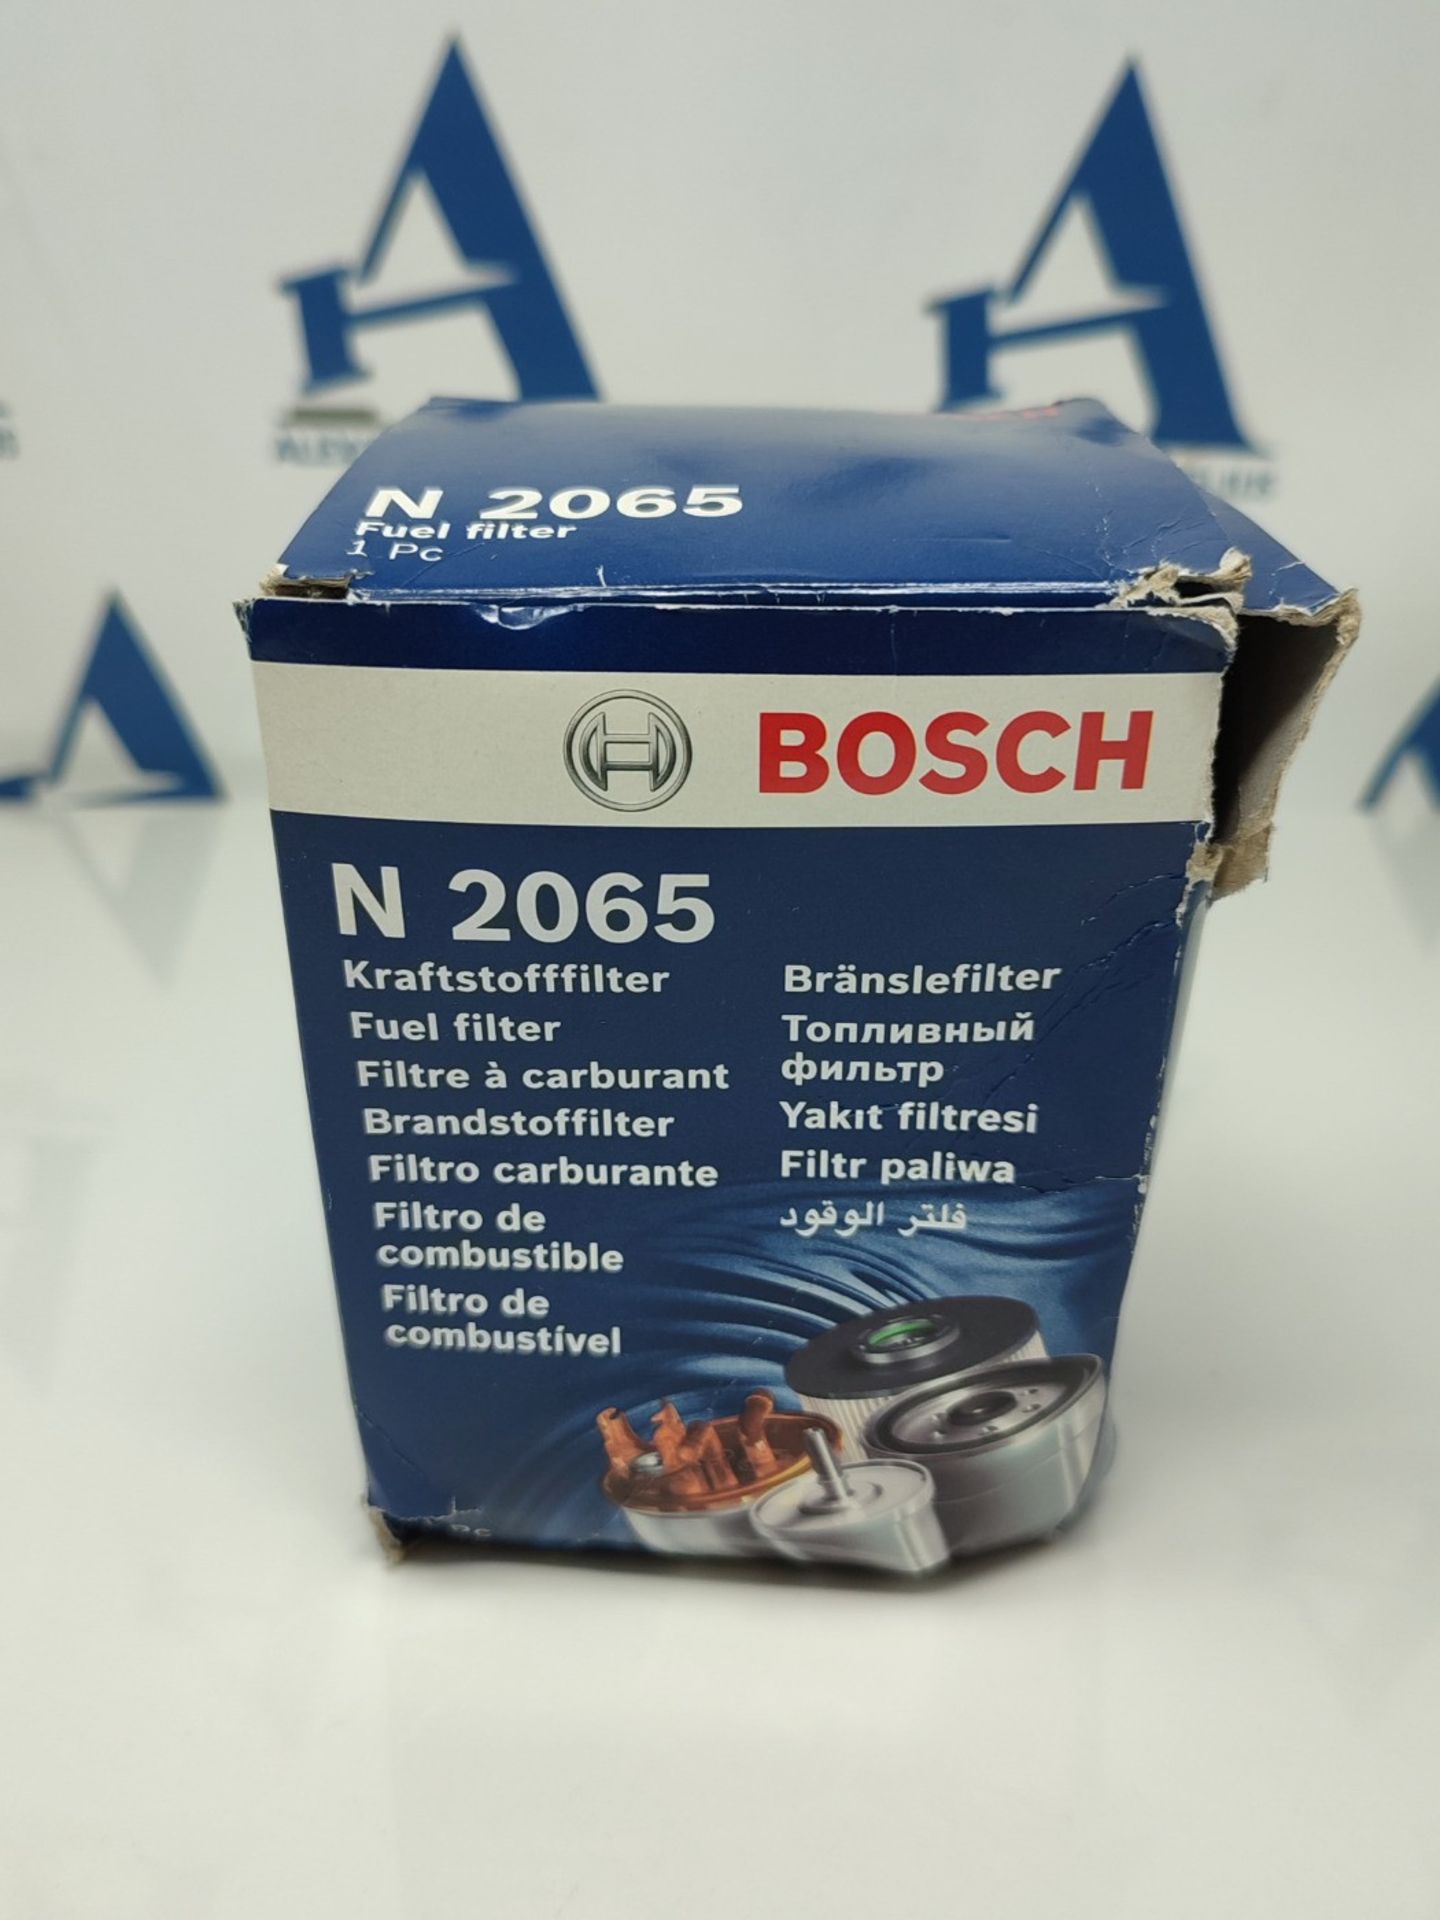 Bosch N2065 - Diesel Filter for Cars - Bild 2 aus 3